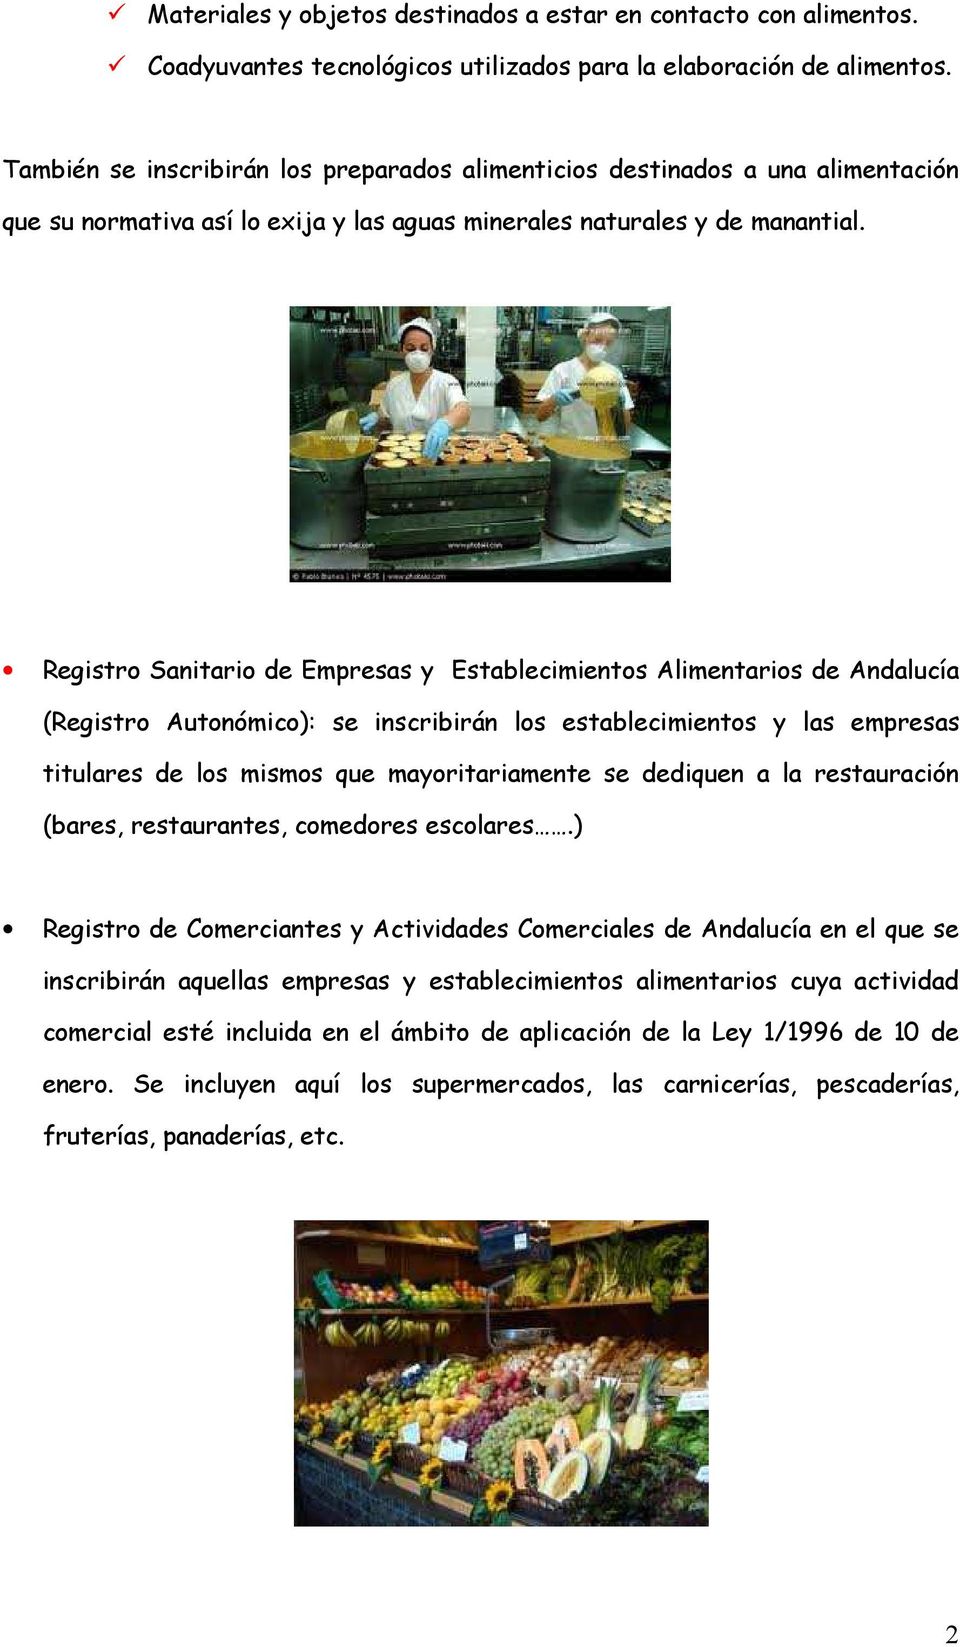 Registro Sanitario de Empresas y Establecimientos Alimentarios de Andalucía (Registro Autonómico): se inscribirán los establecimientos y las empresas titulares de los mismos que mayoritariamente se